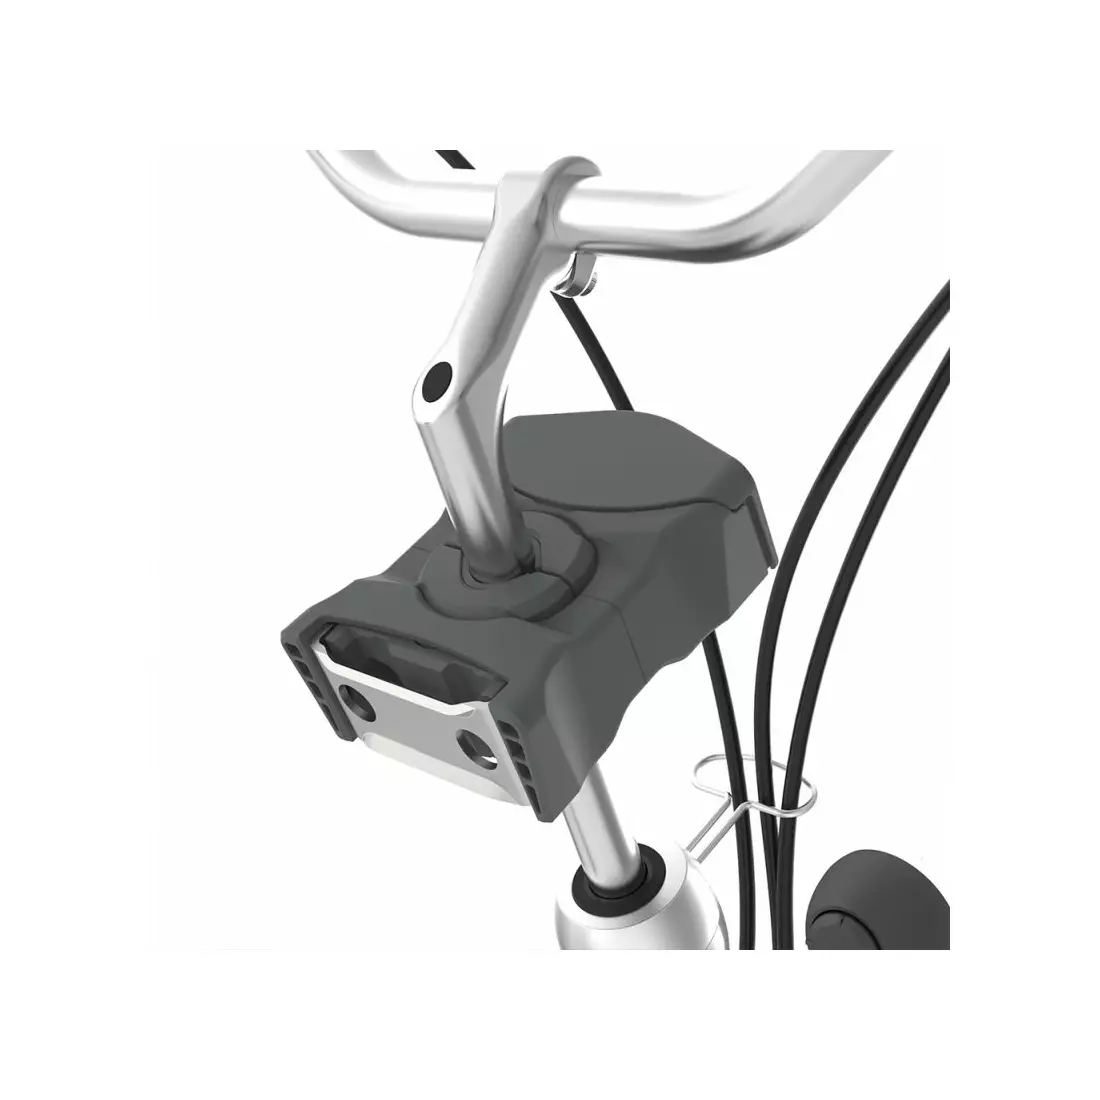 URBAN IKI Fahrradsitz - vorne, beige/black 220585